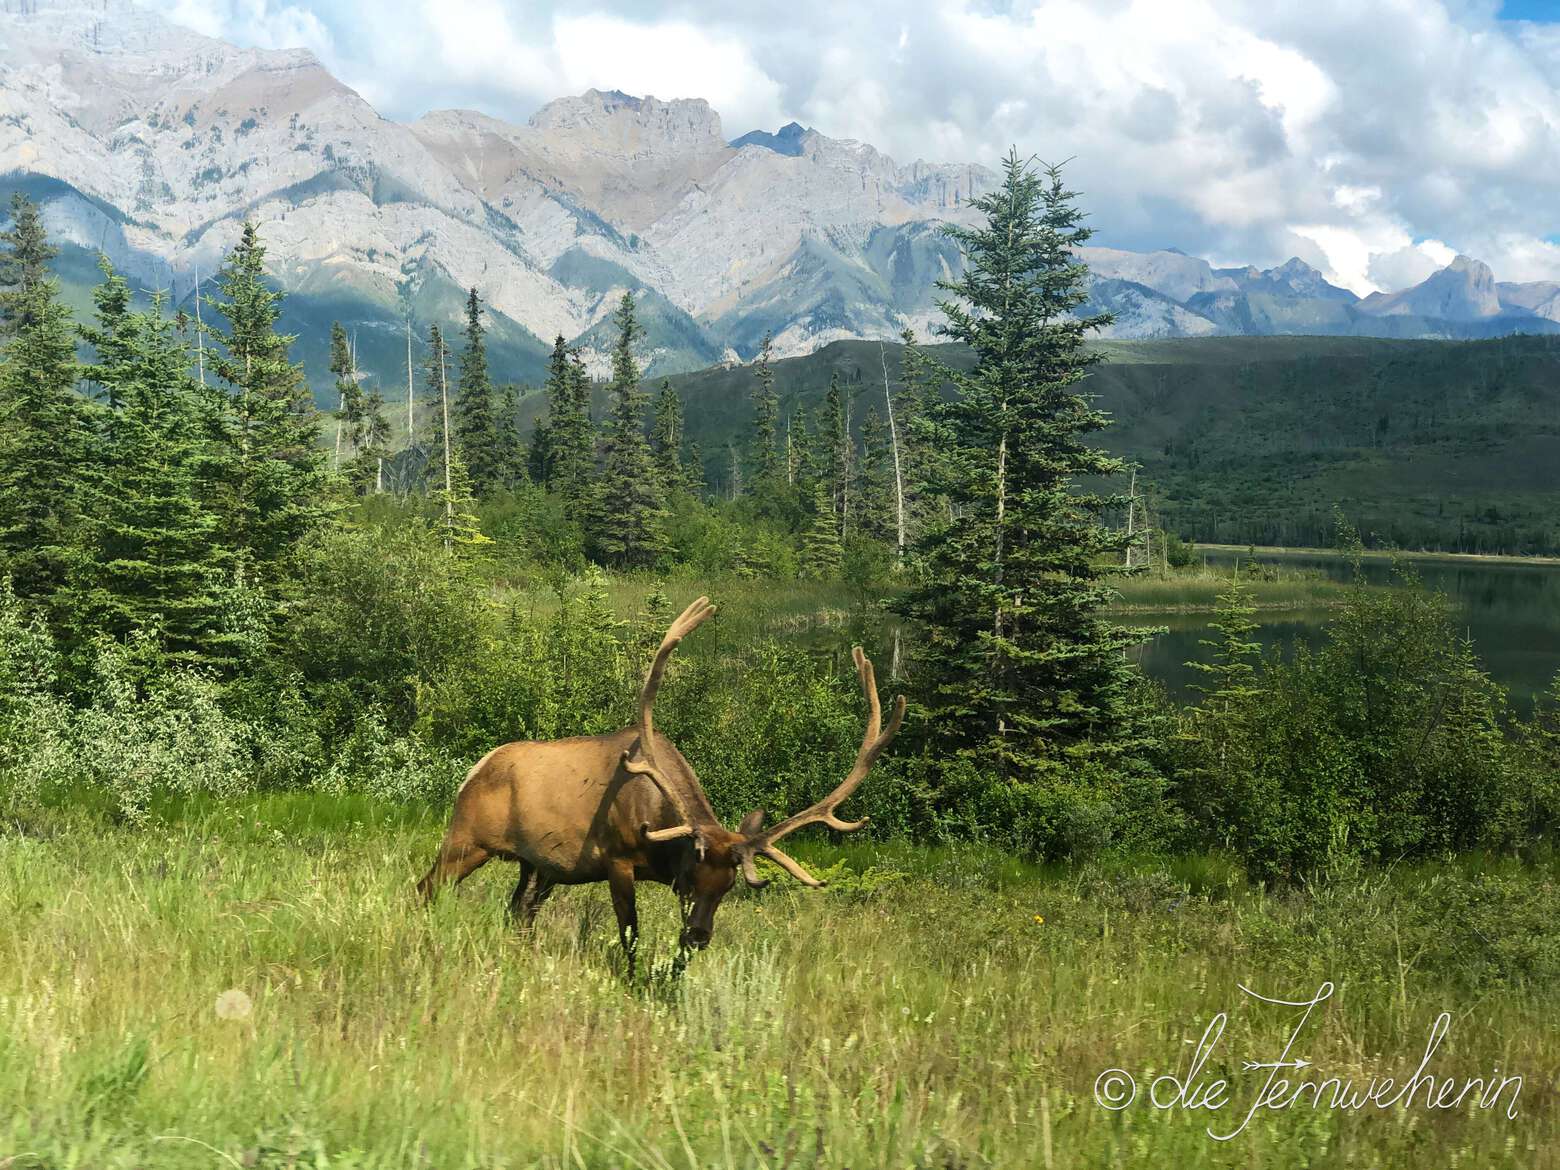 A majestic bull elk grazes in front of a mountain backdrop.